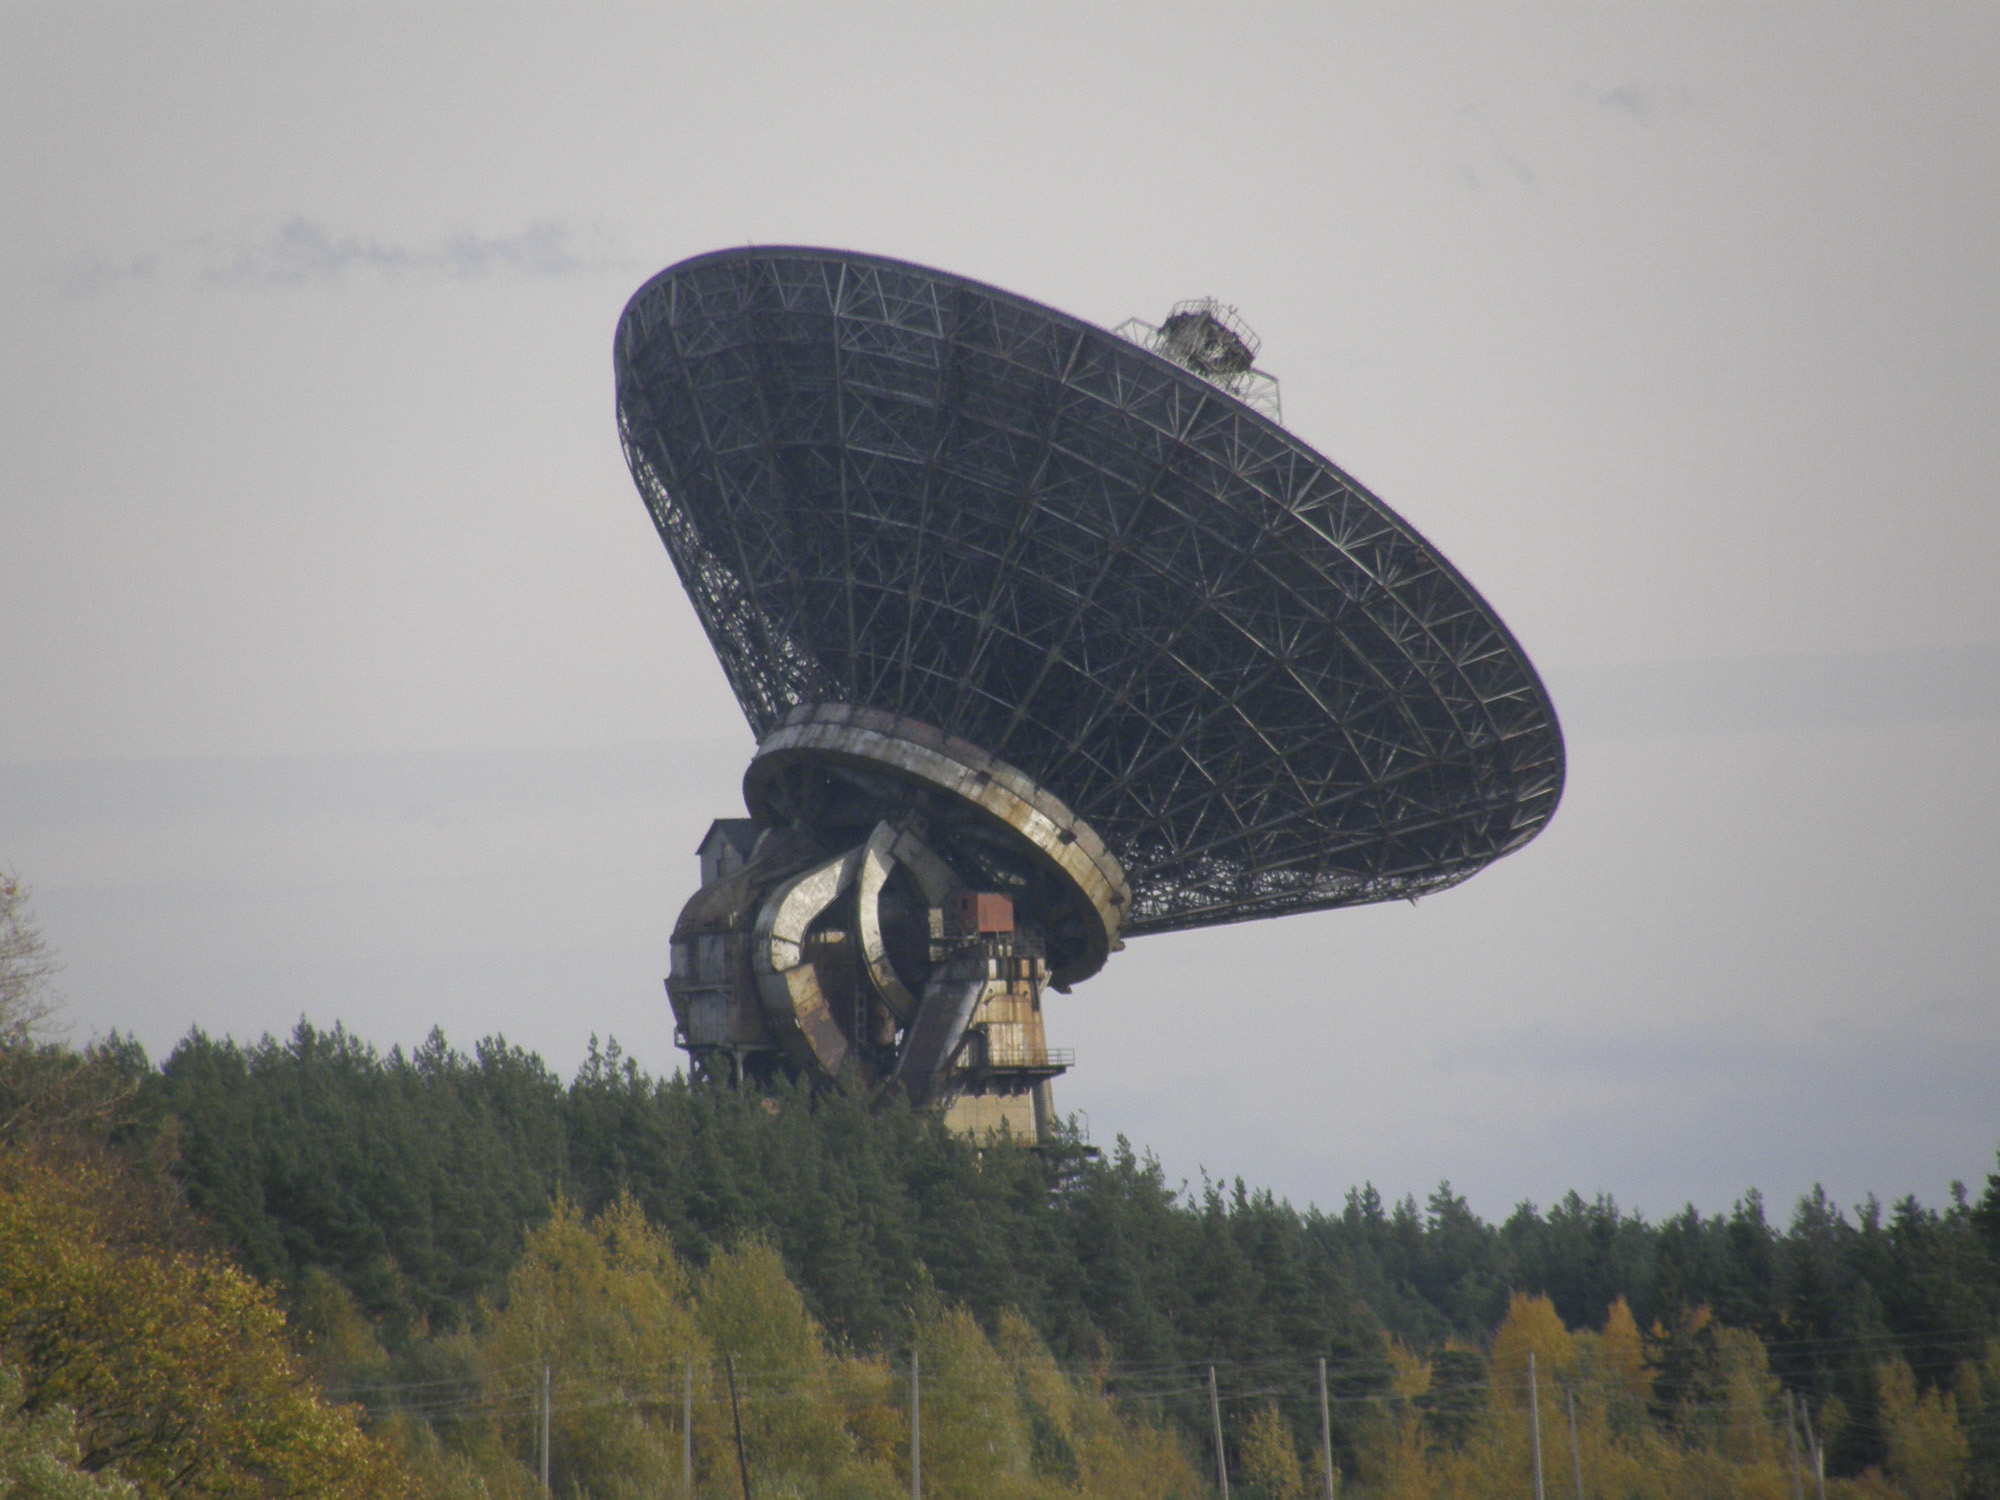 Самый большой космический аппарат. Радиоастрономическая обсерватория Калязин. Радиотелескоп ТНА-1500 Калязин. Заброшенный радиотелескоп Калязин. Радиотелескоп Медвежьи озера.